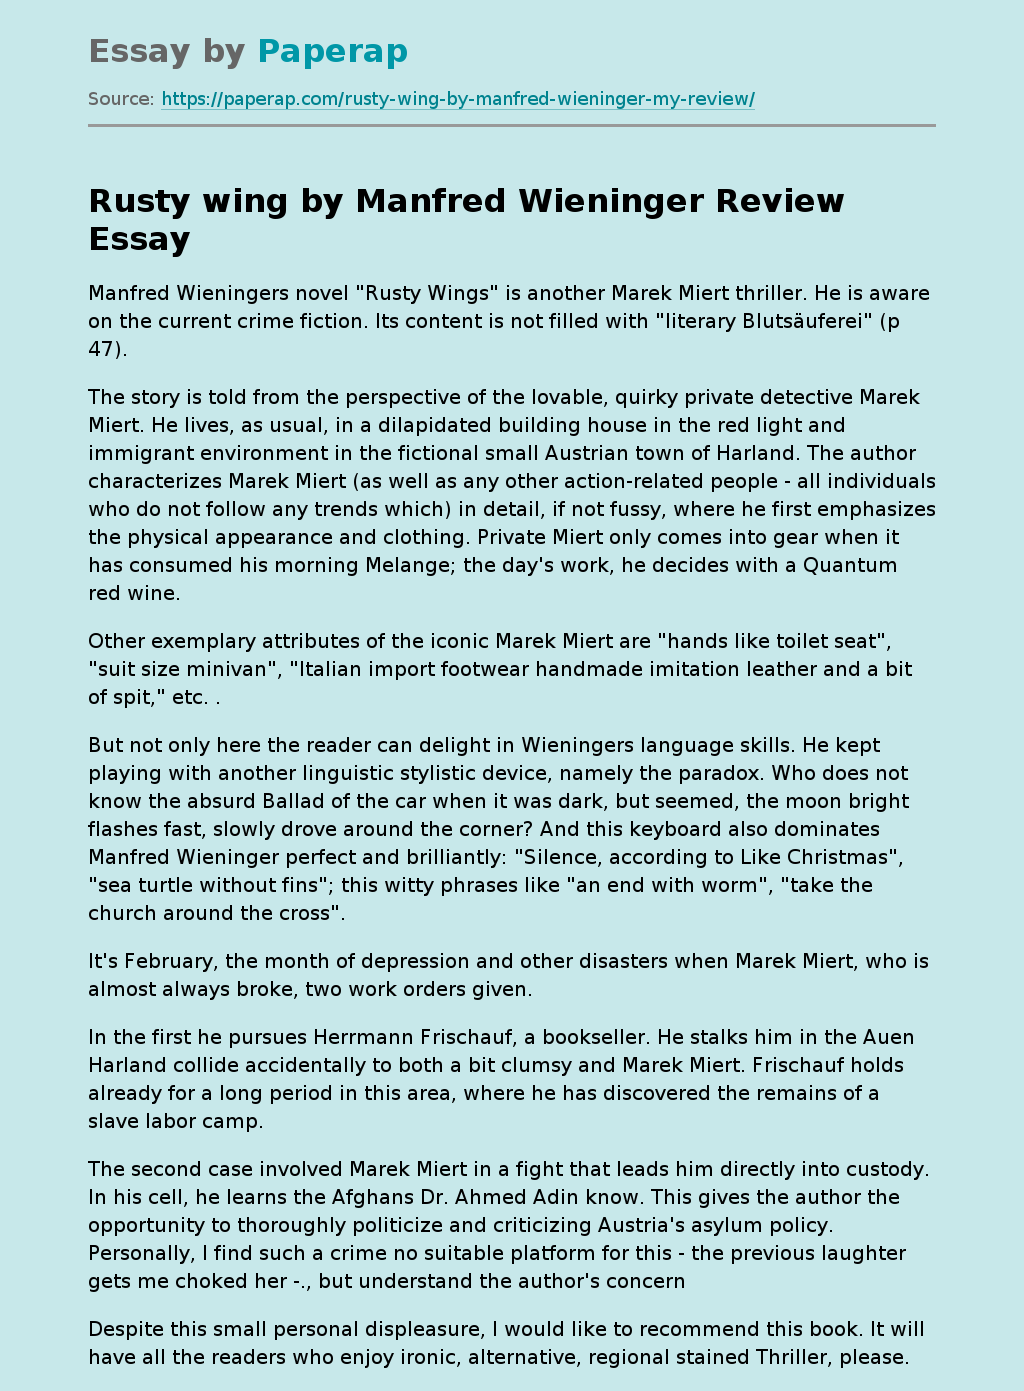 “Rusty Wing” by Manfred Wieninger